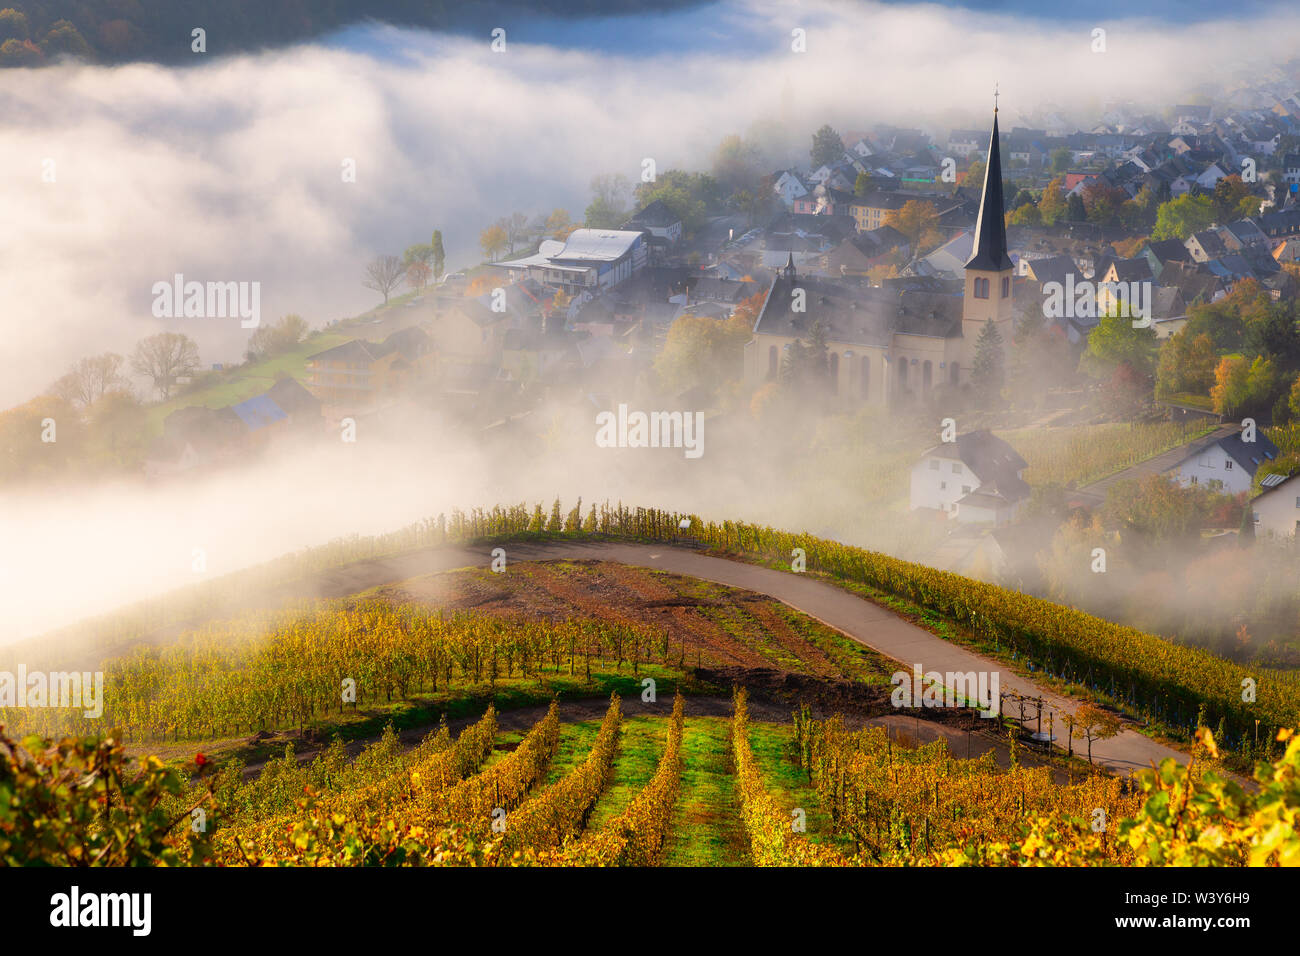 Vignes en automne dans la vallée de la Moselle avec un village et une église dans les nuages sur un beau matin d'automne à la campagne Banque D'Images